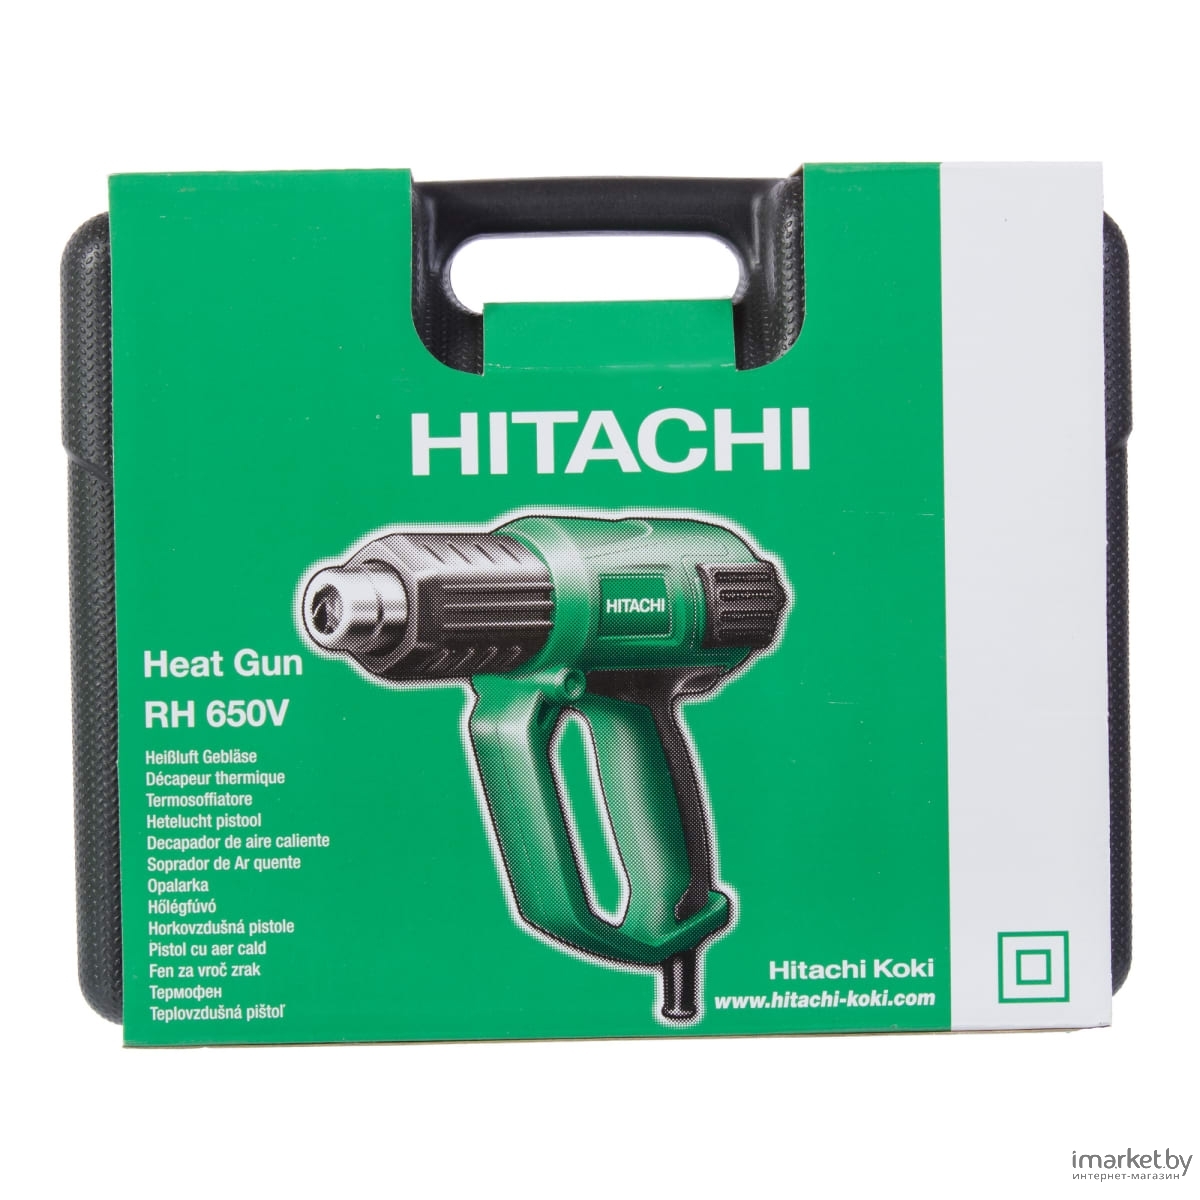 Hitachi Hot Air Gun RH650V